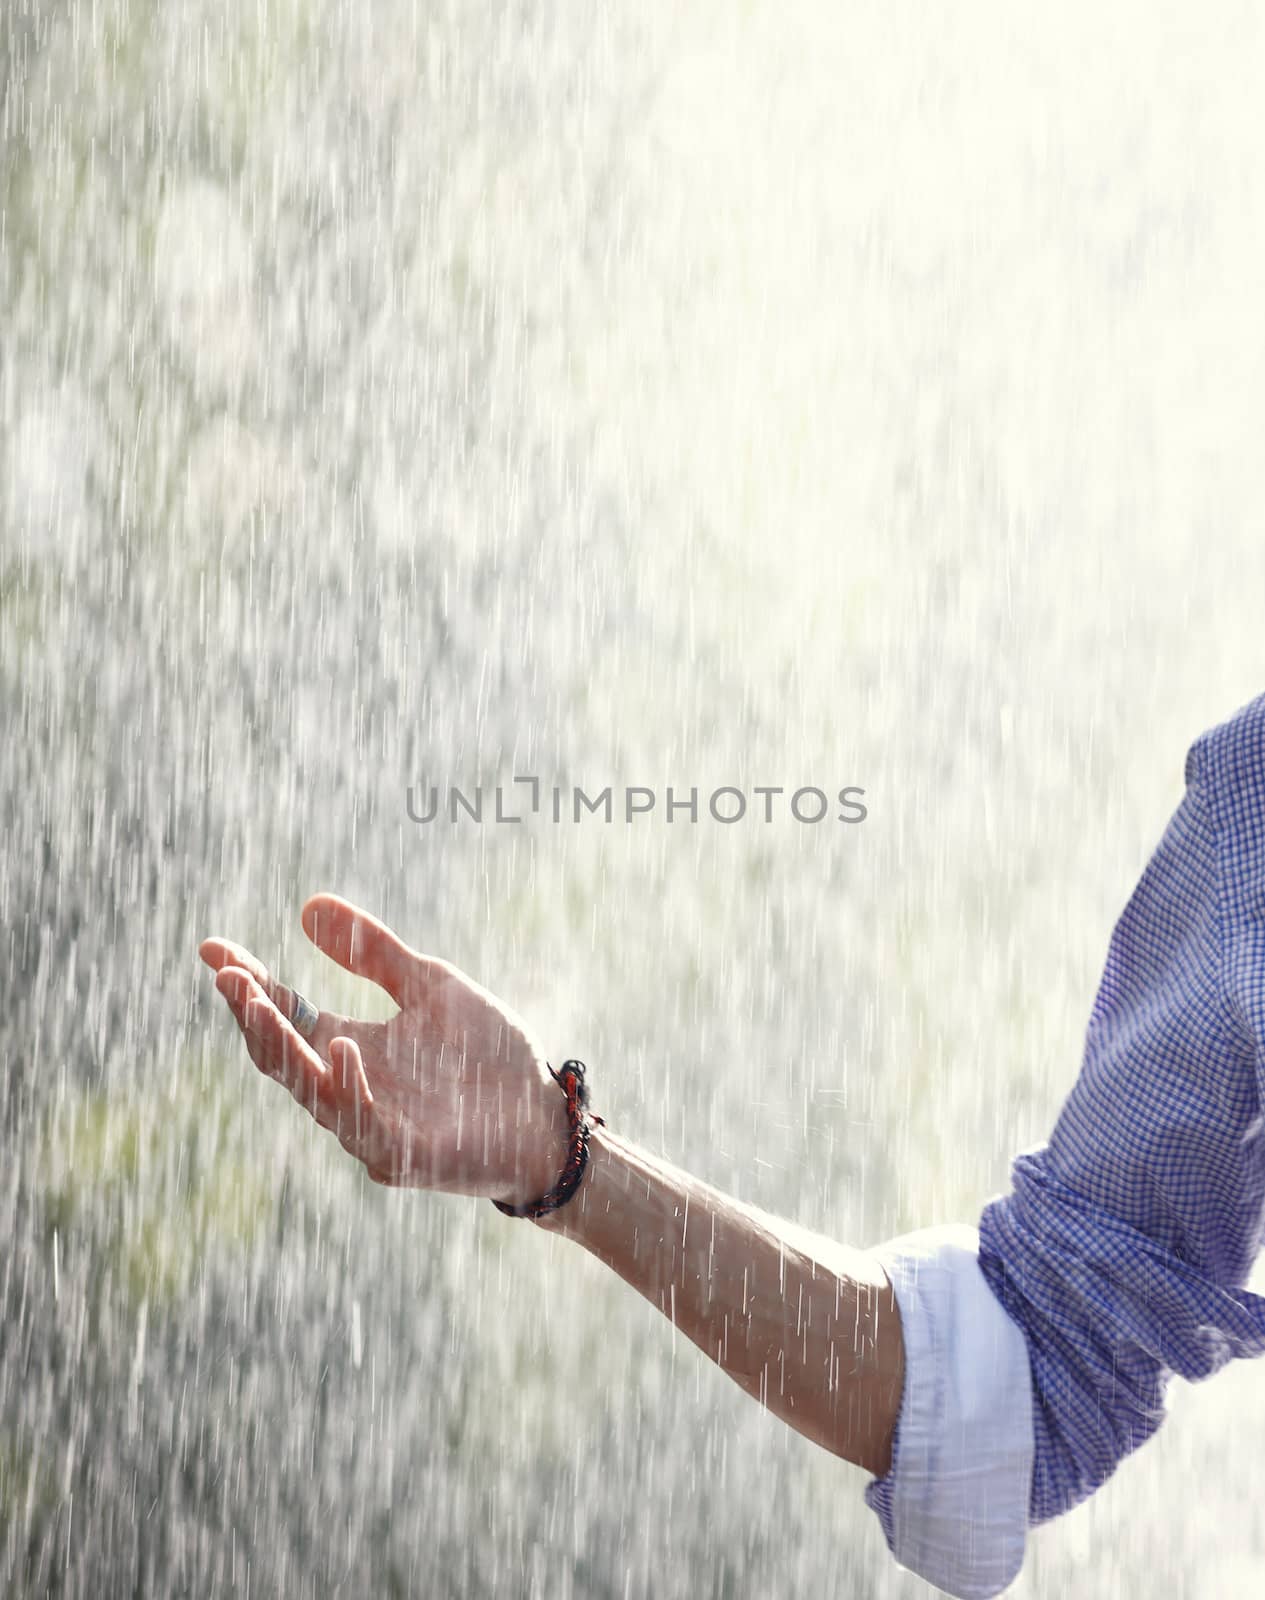 Rain in spring by Novic